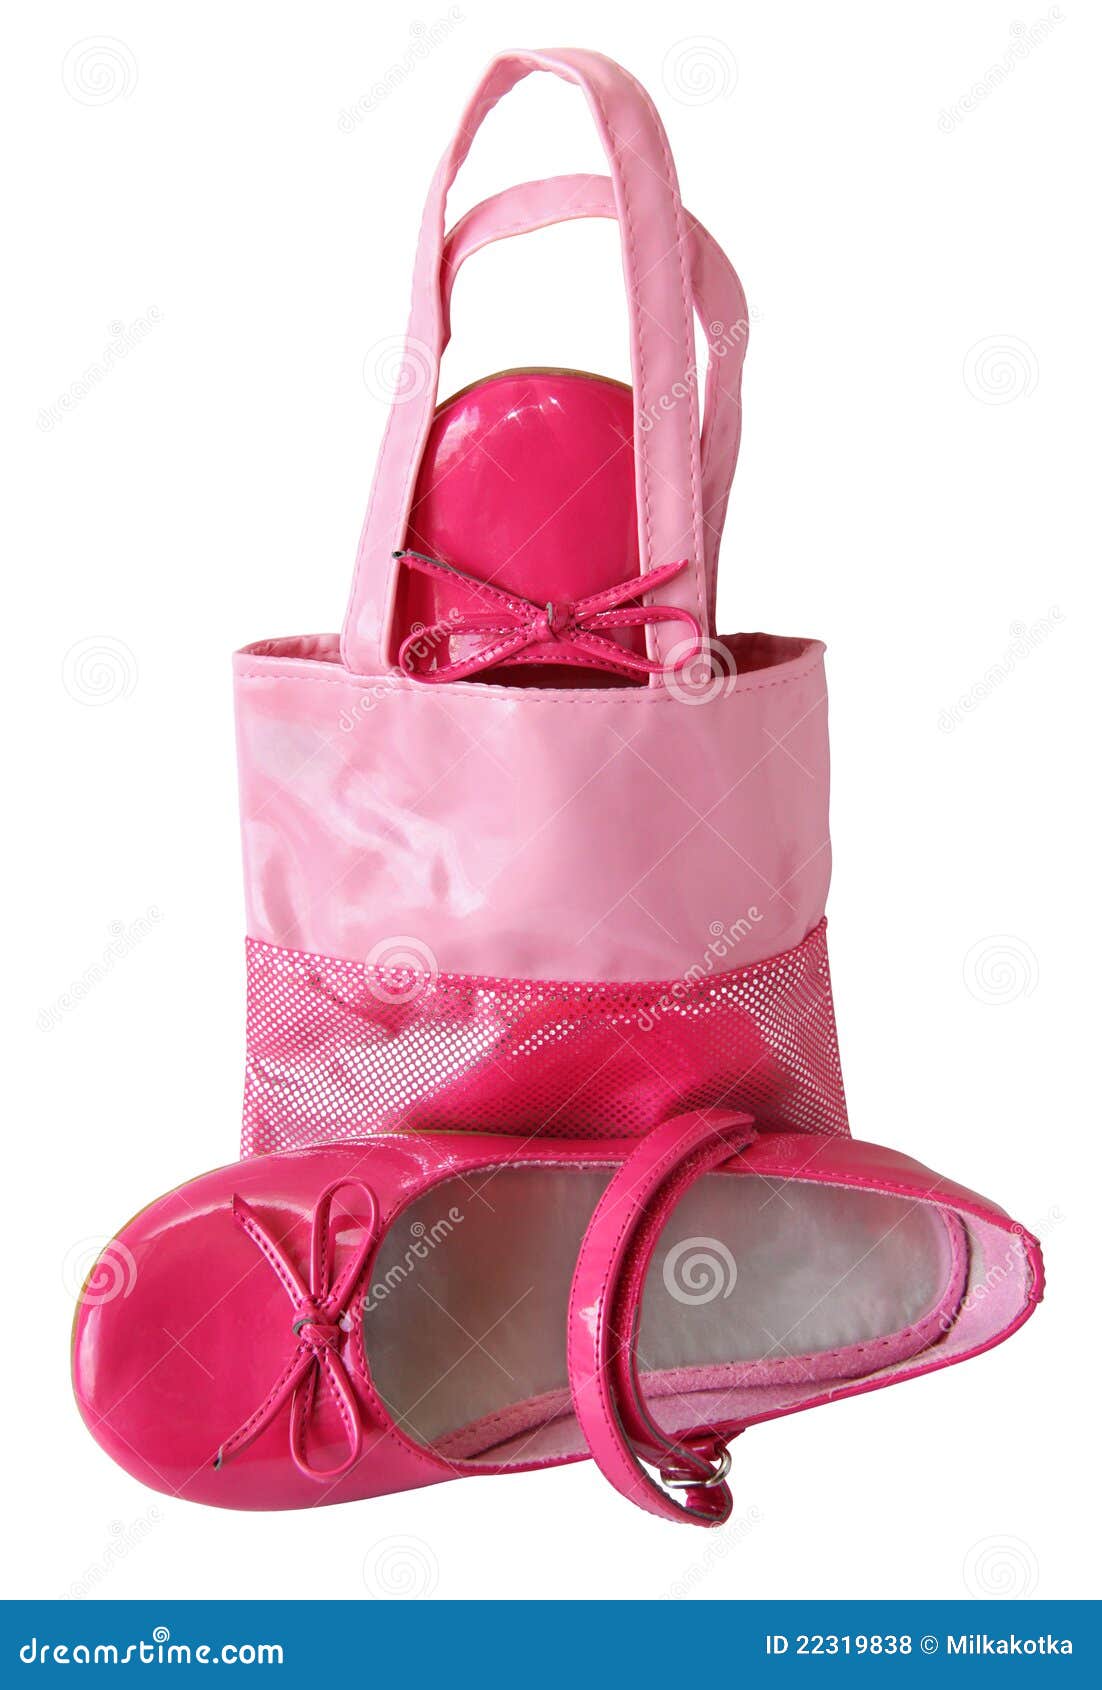 baby pink shoes and handbag